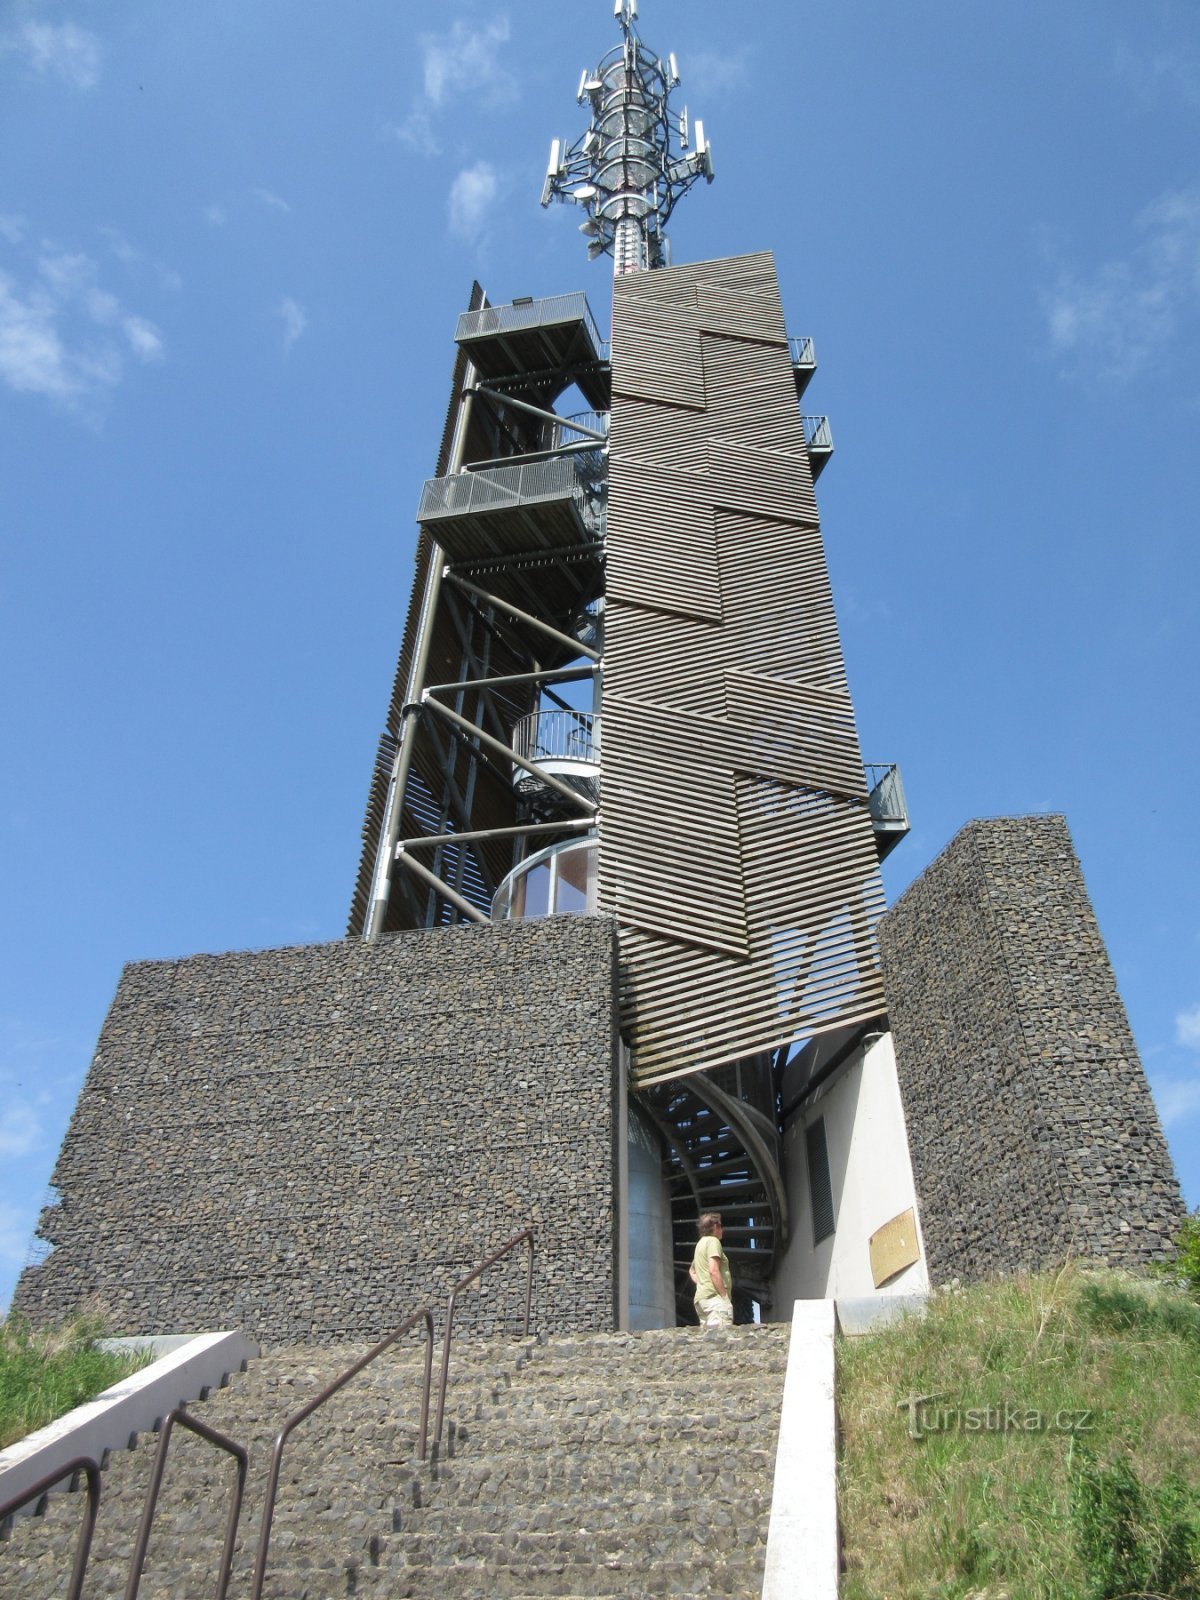 Hrubý Jeseník - history and Romanka lookout tower